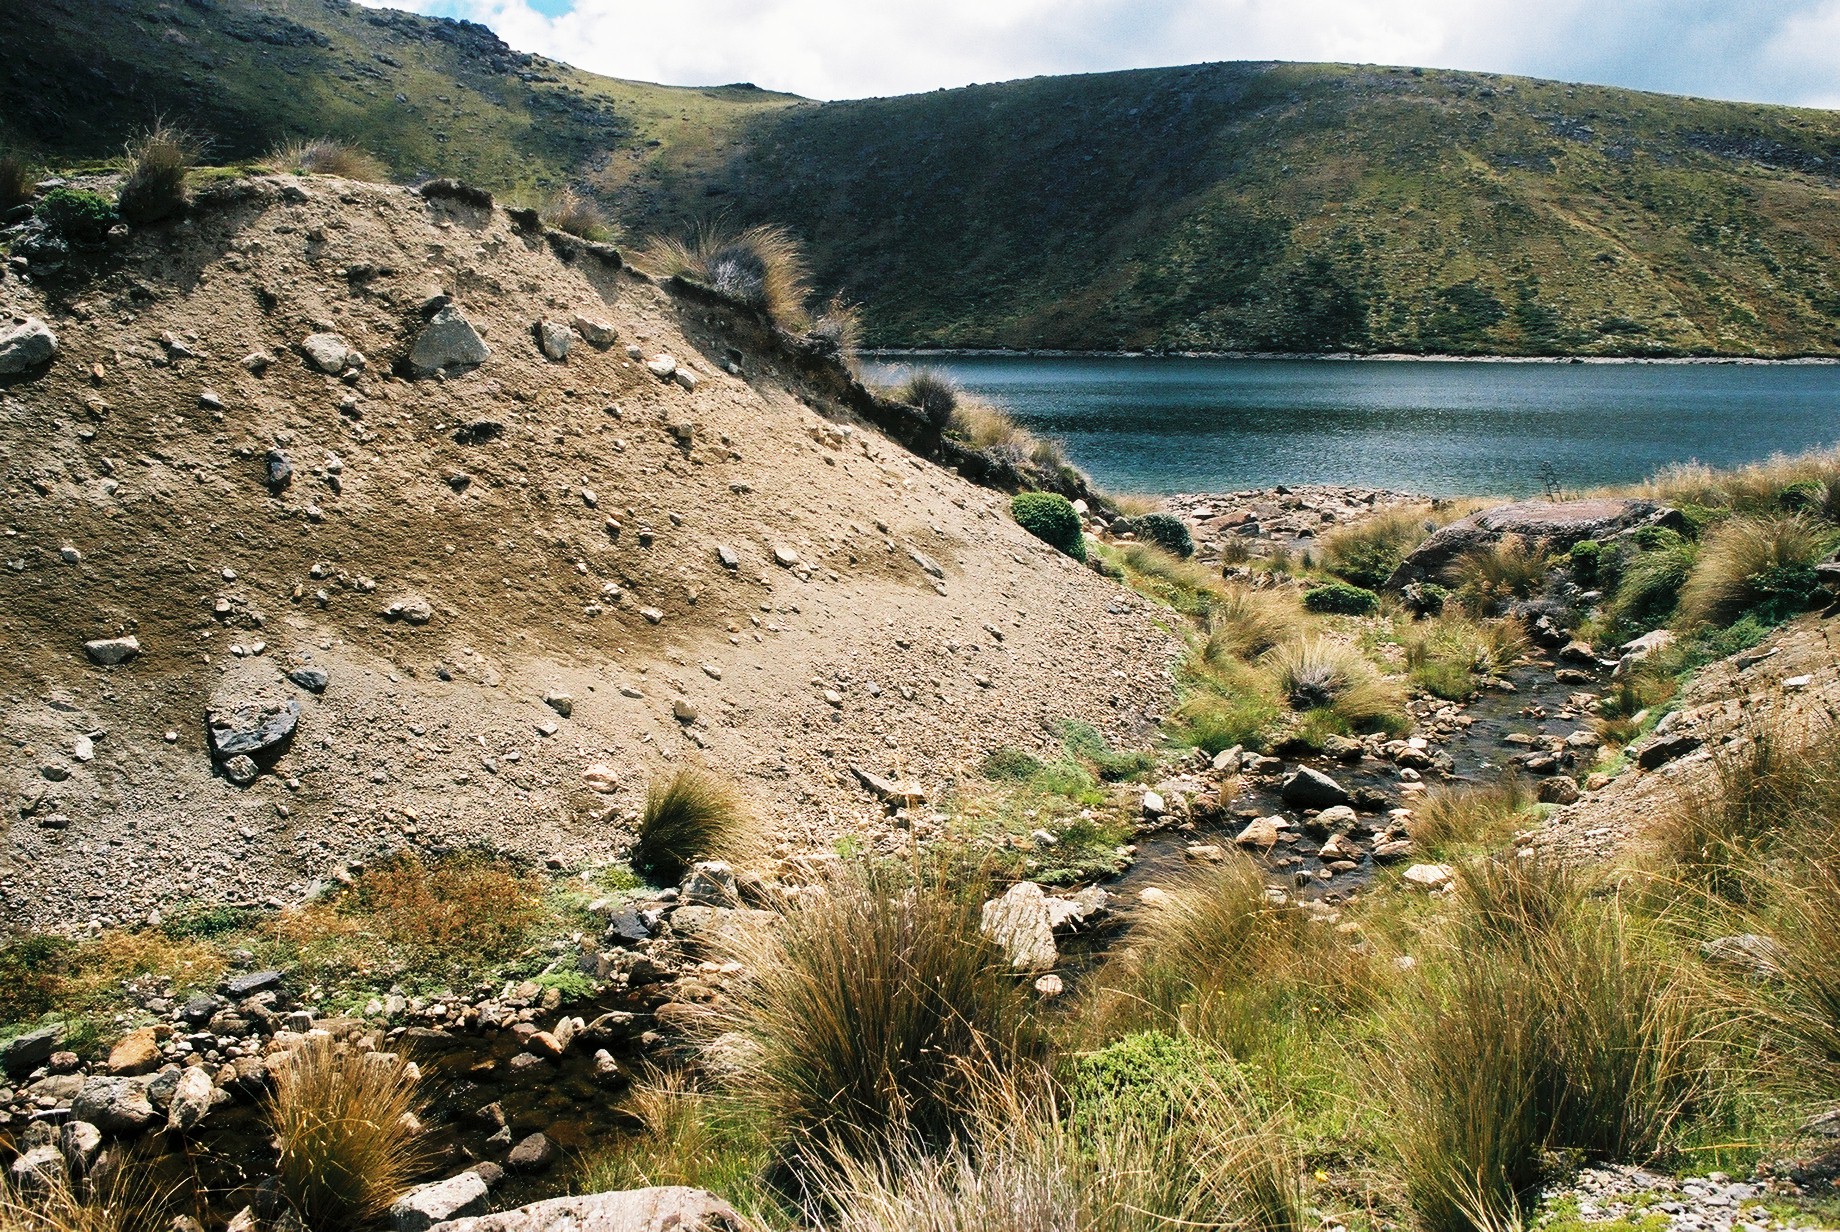 fotka / image Kahurangi National Park, color negatives, New Zealand